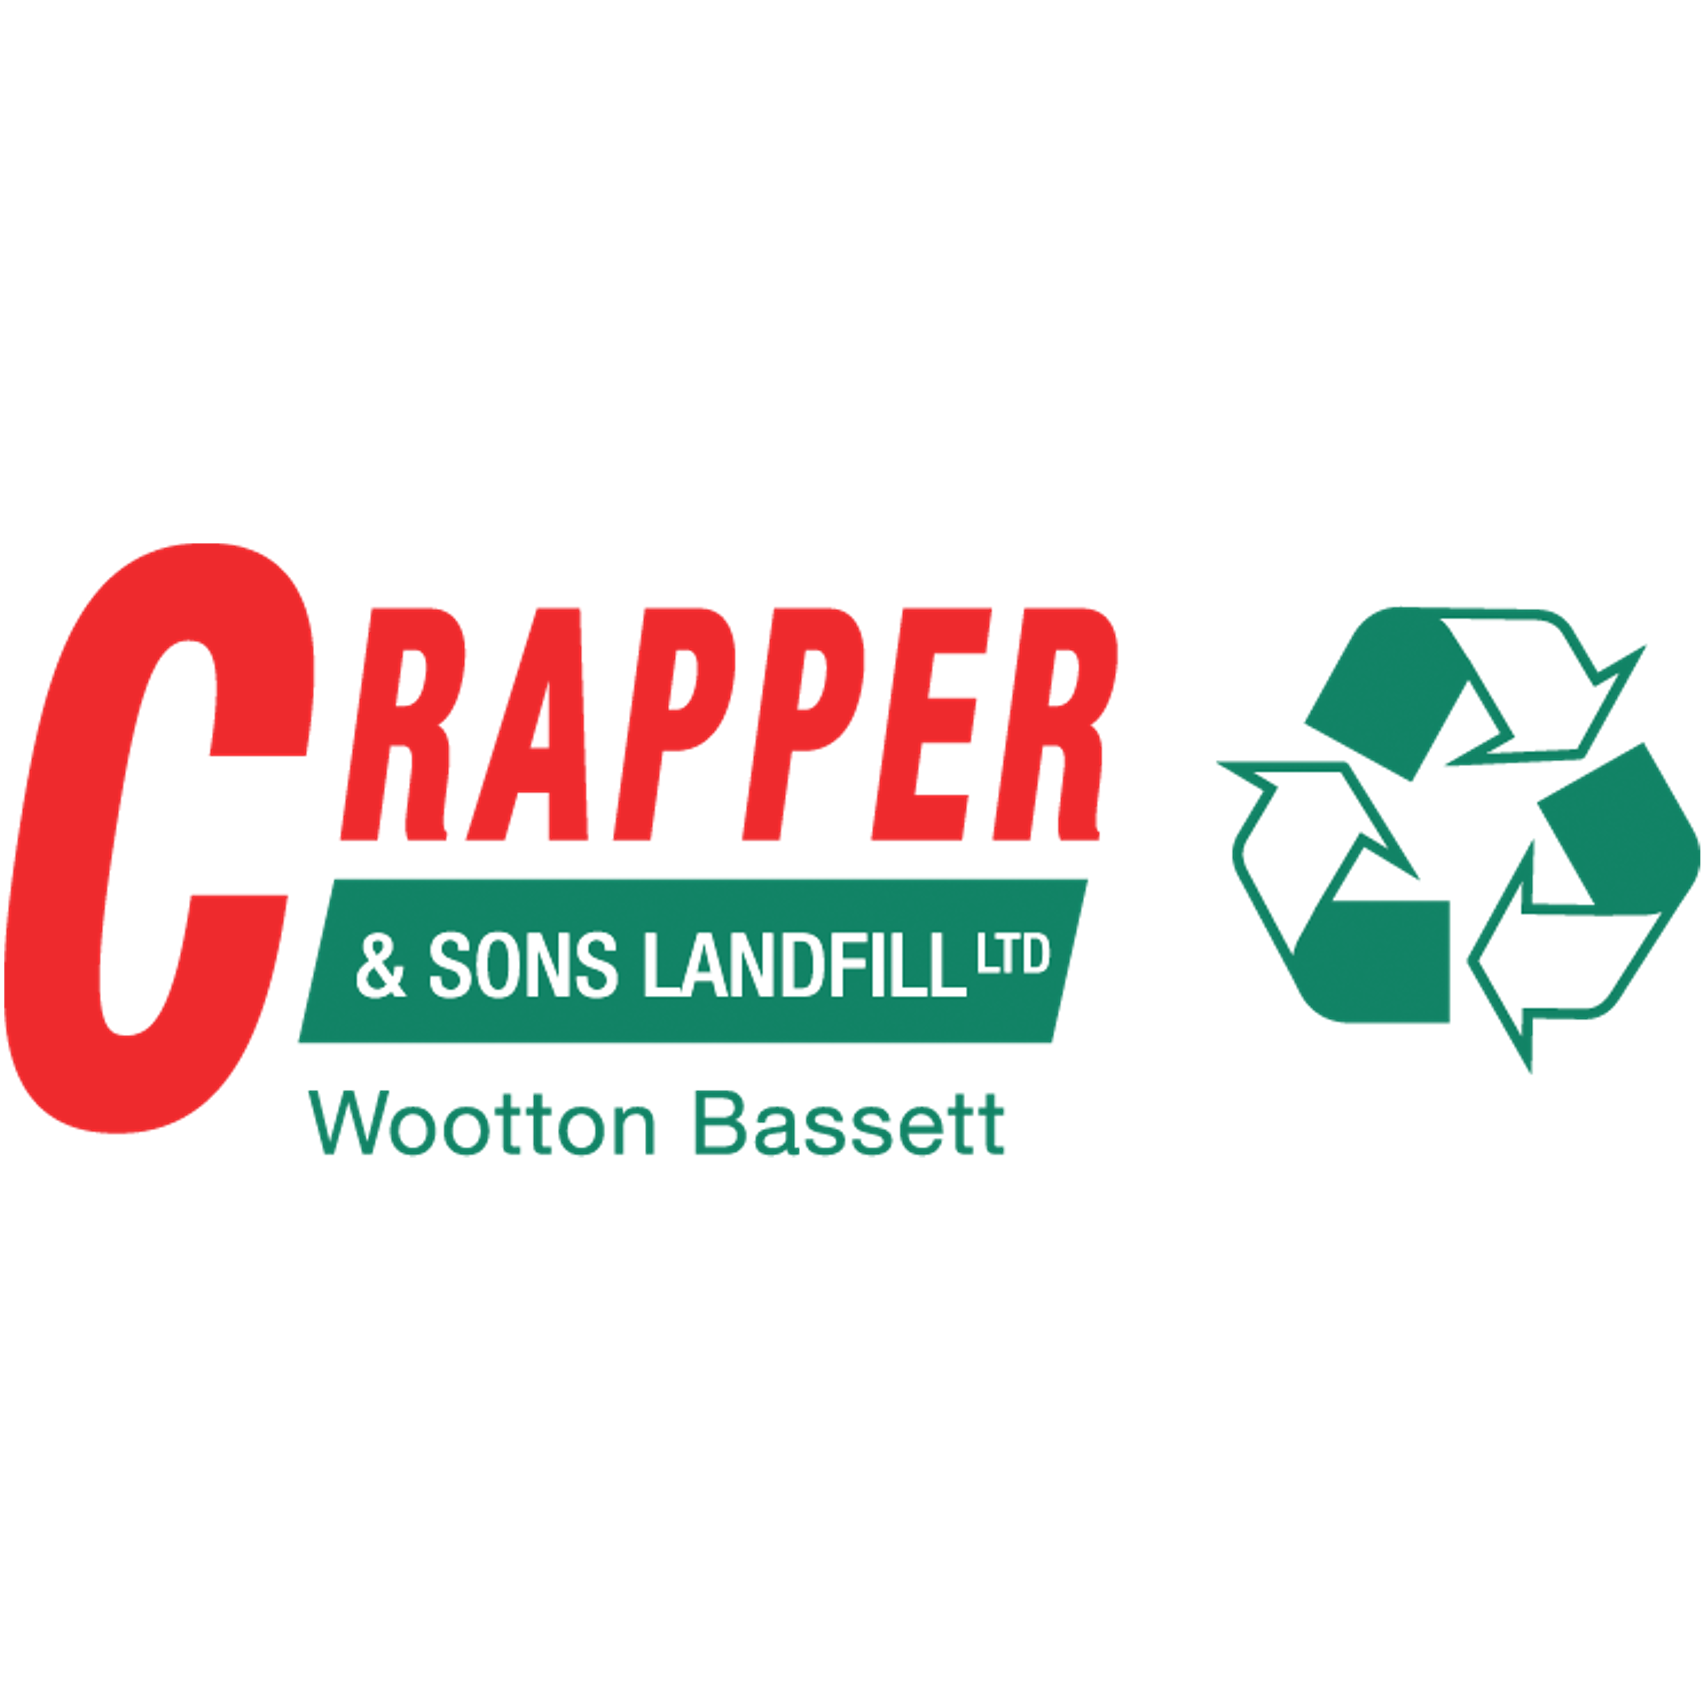 Crapper & Sons Landfill Ltd Logo